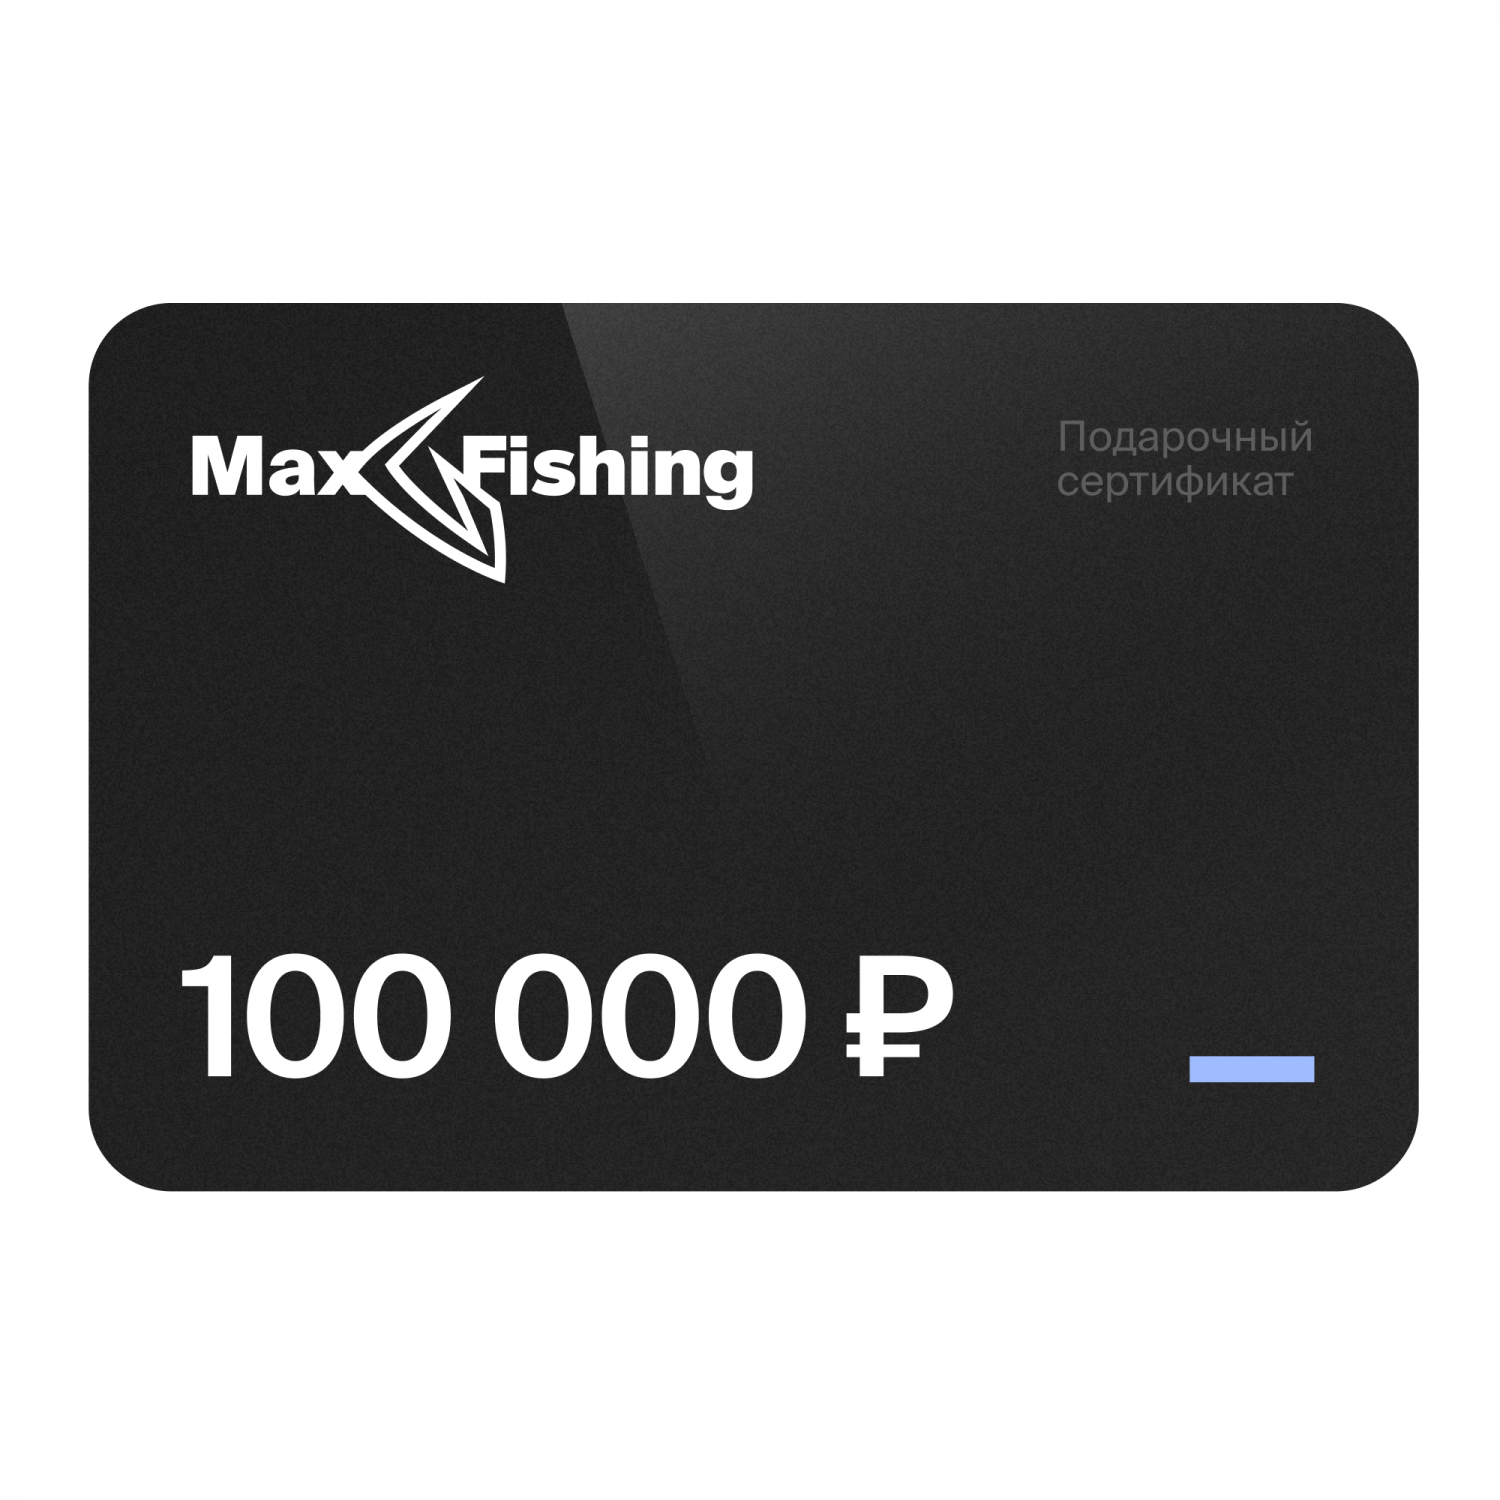 Подарочный сертификат MaxFishing 100 000 ₽ подарочный сертификат на 70 000 рублей